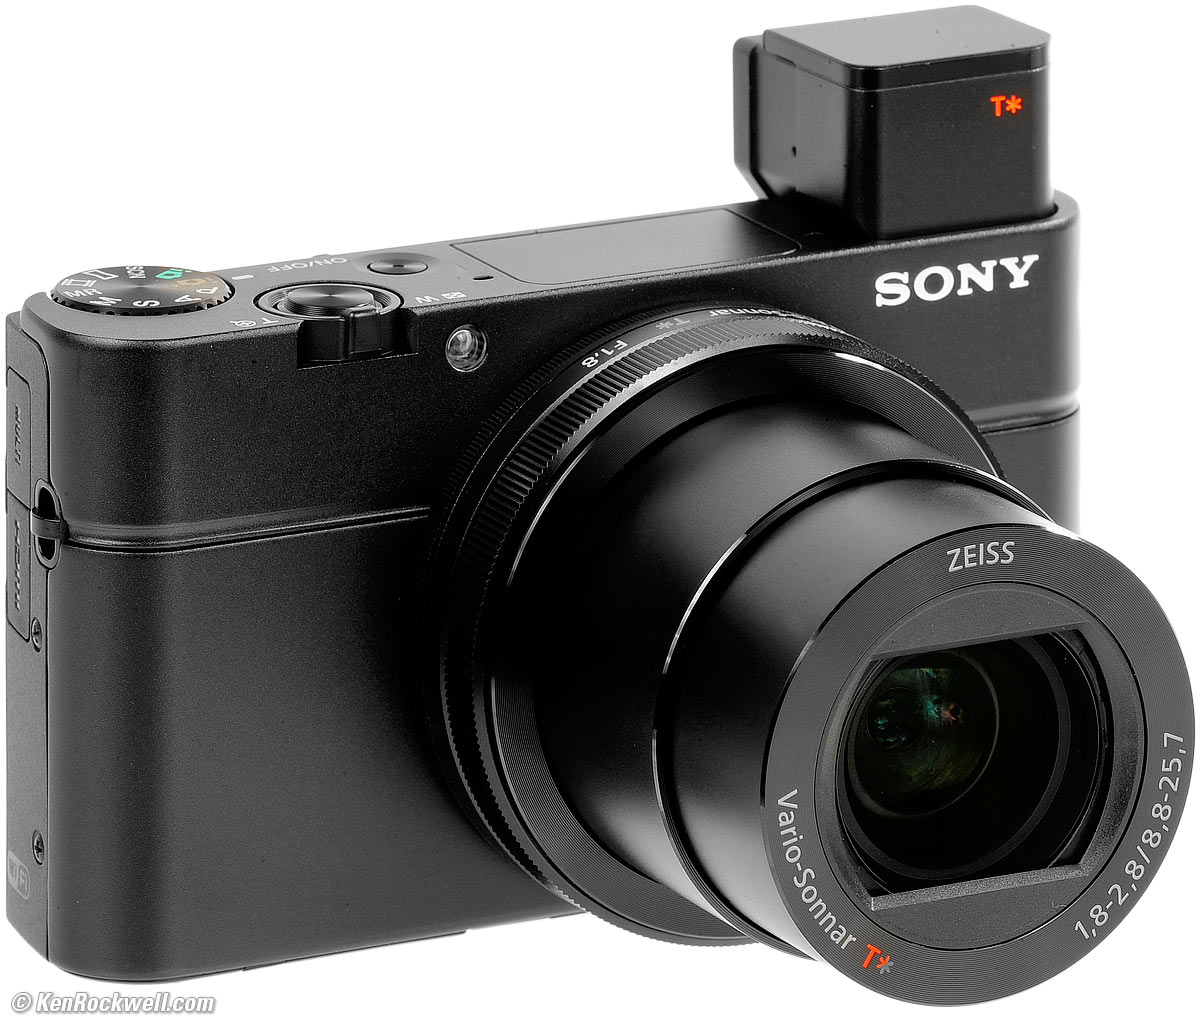 Sony DSC-RX100 Mk III Review